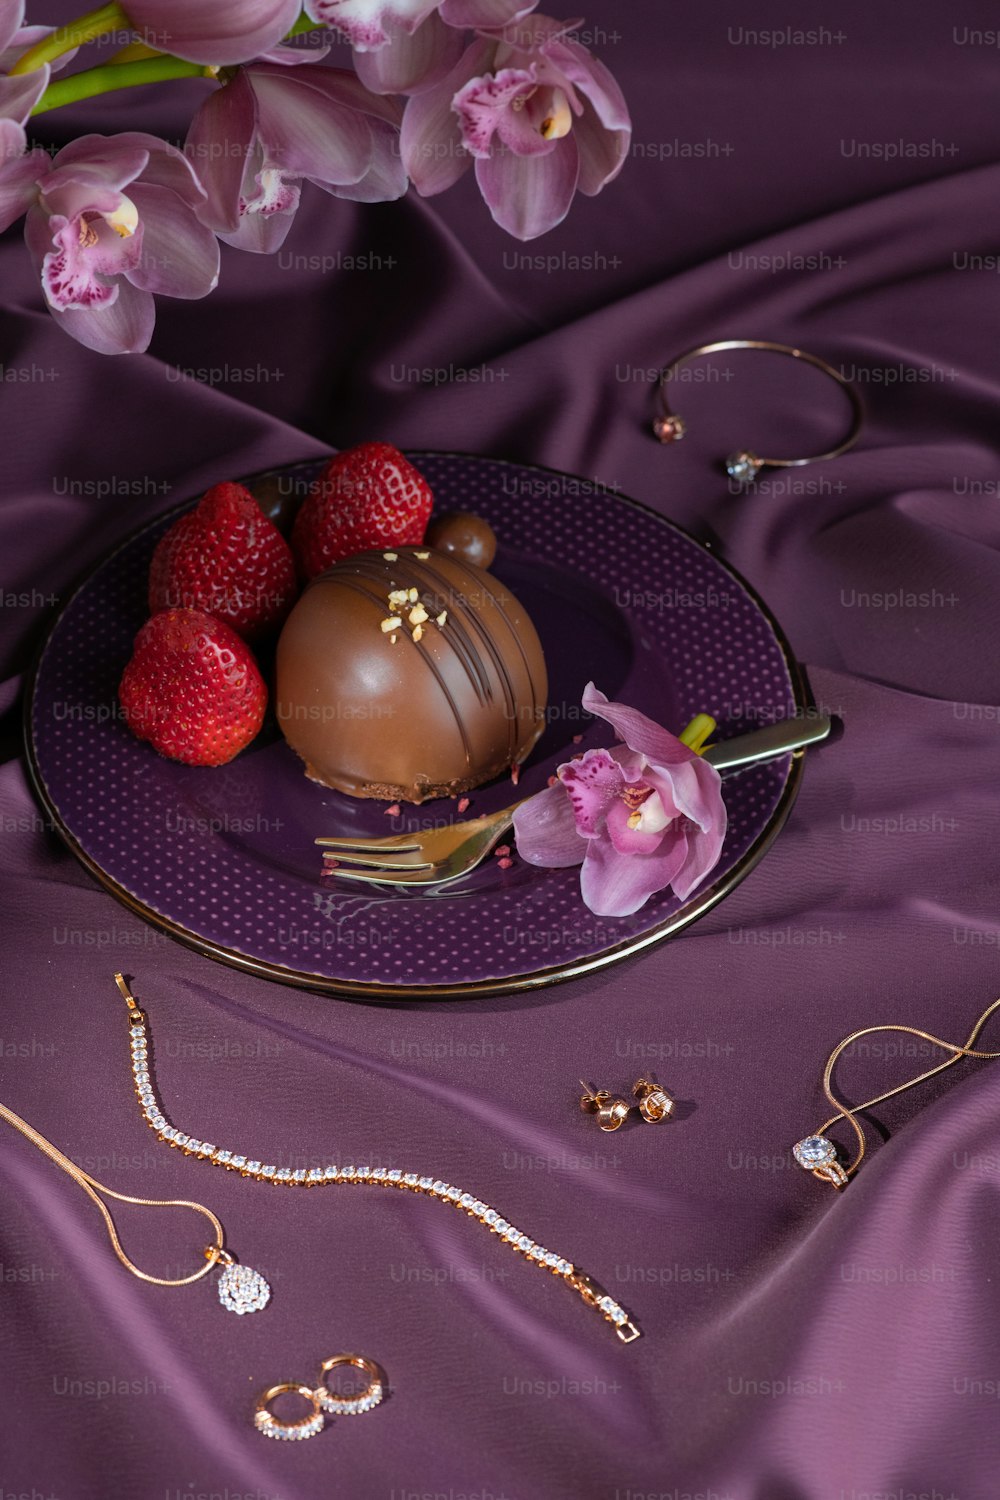 un piatto viola sormontato da un dessert ricoperto di cioccolato